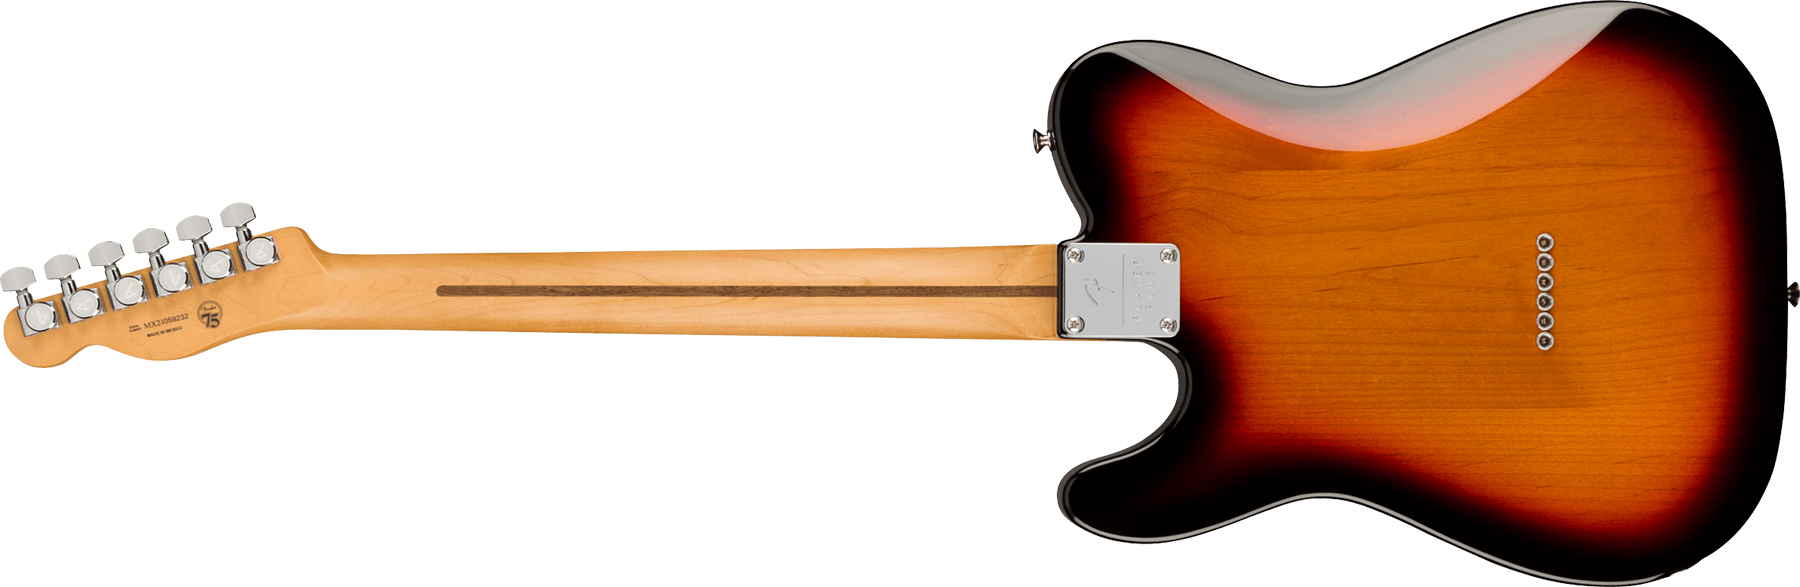 Fender Tele Player Plus Nashville Mex 3s Ht Mn - 3-color Sunburst - Guitarra eléctrica con forma de tel - Variation 1